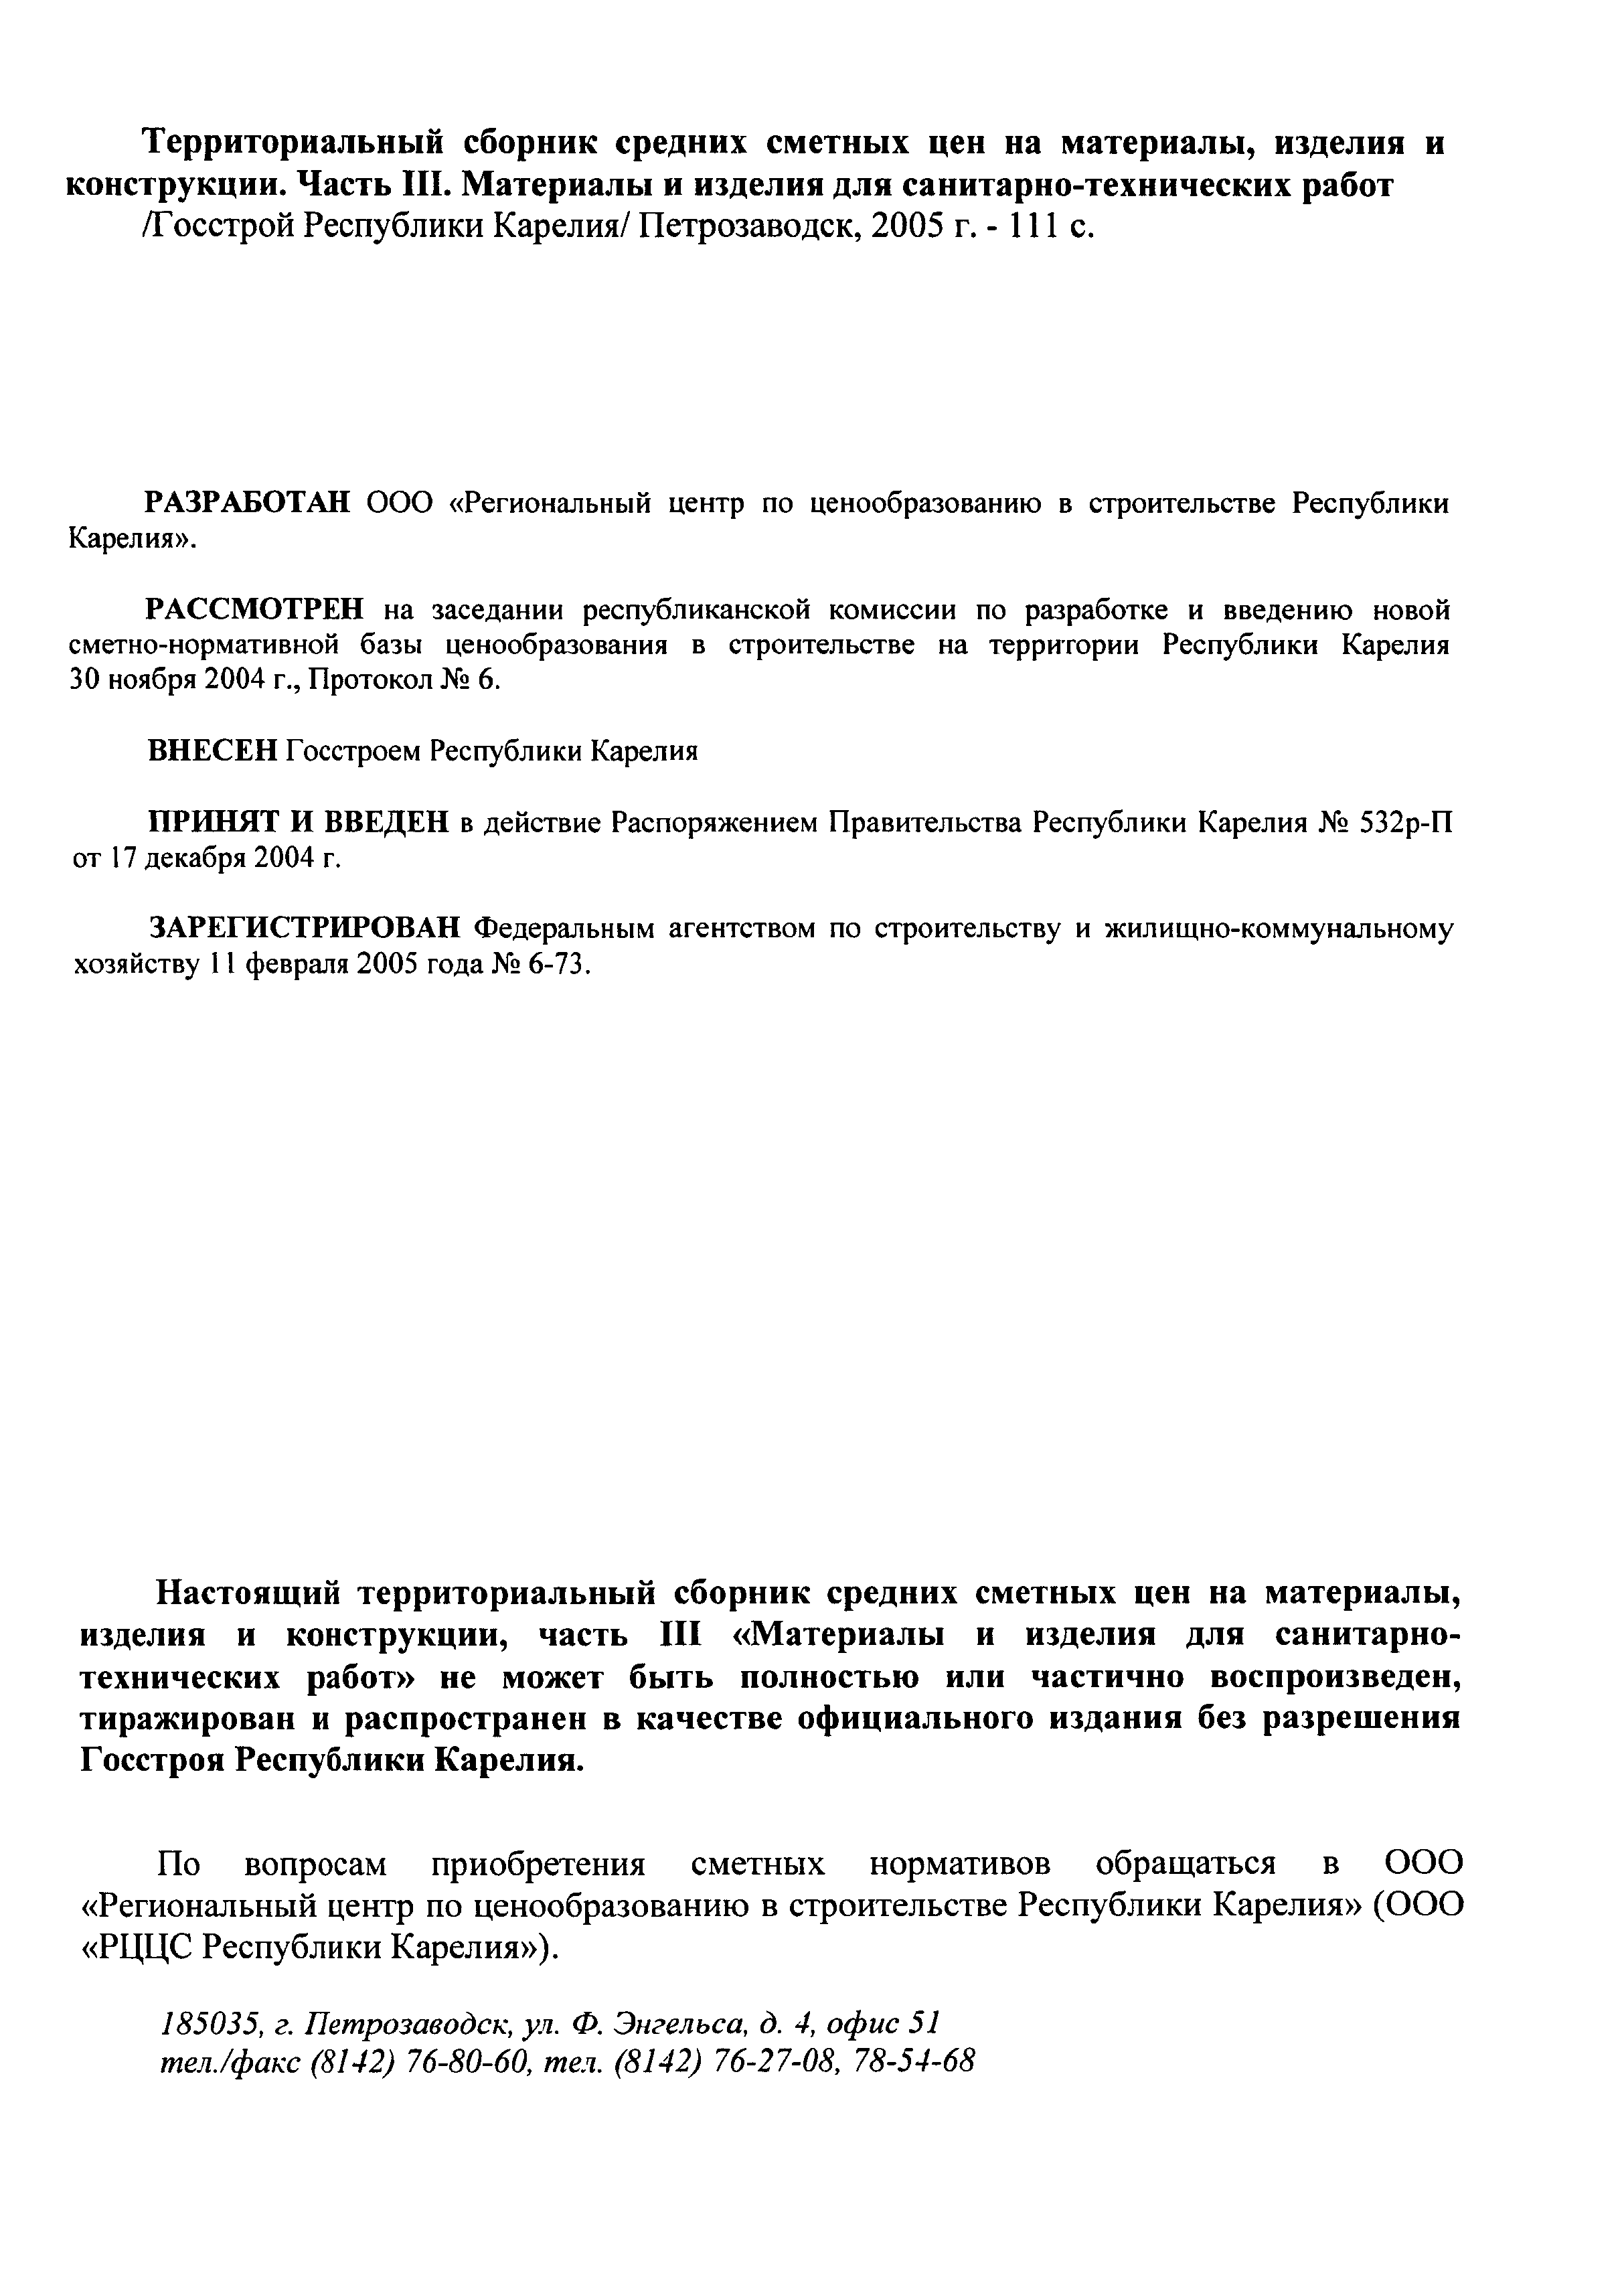 ТСЦ Республика Карелия 81-01-2001